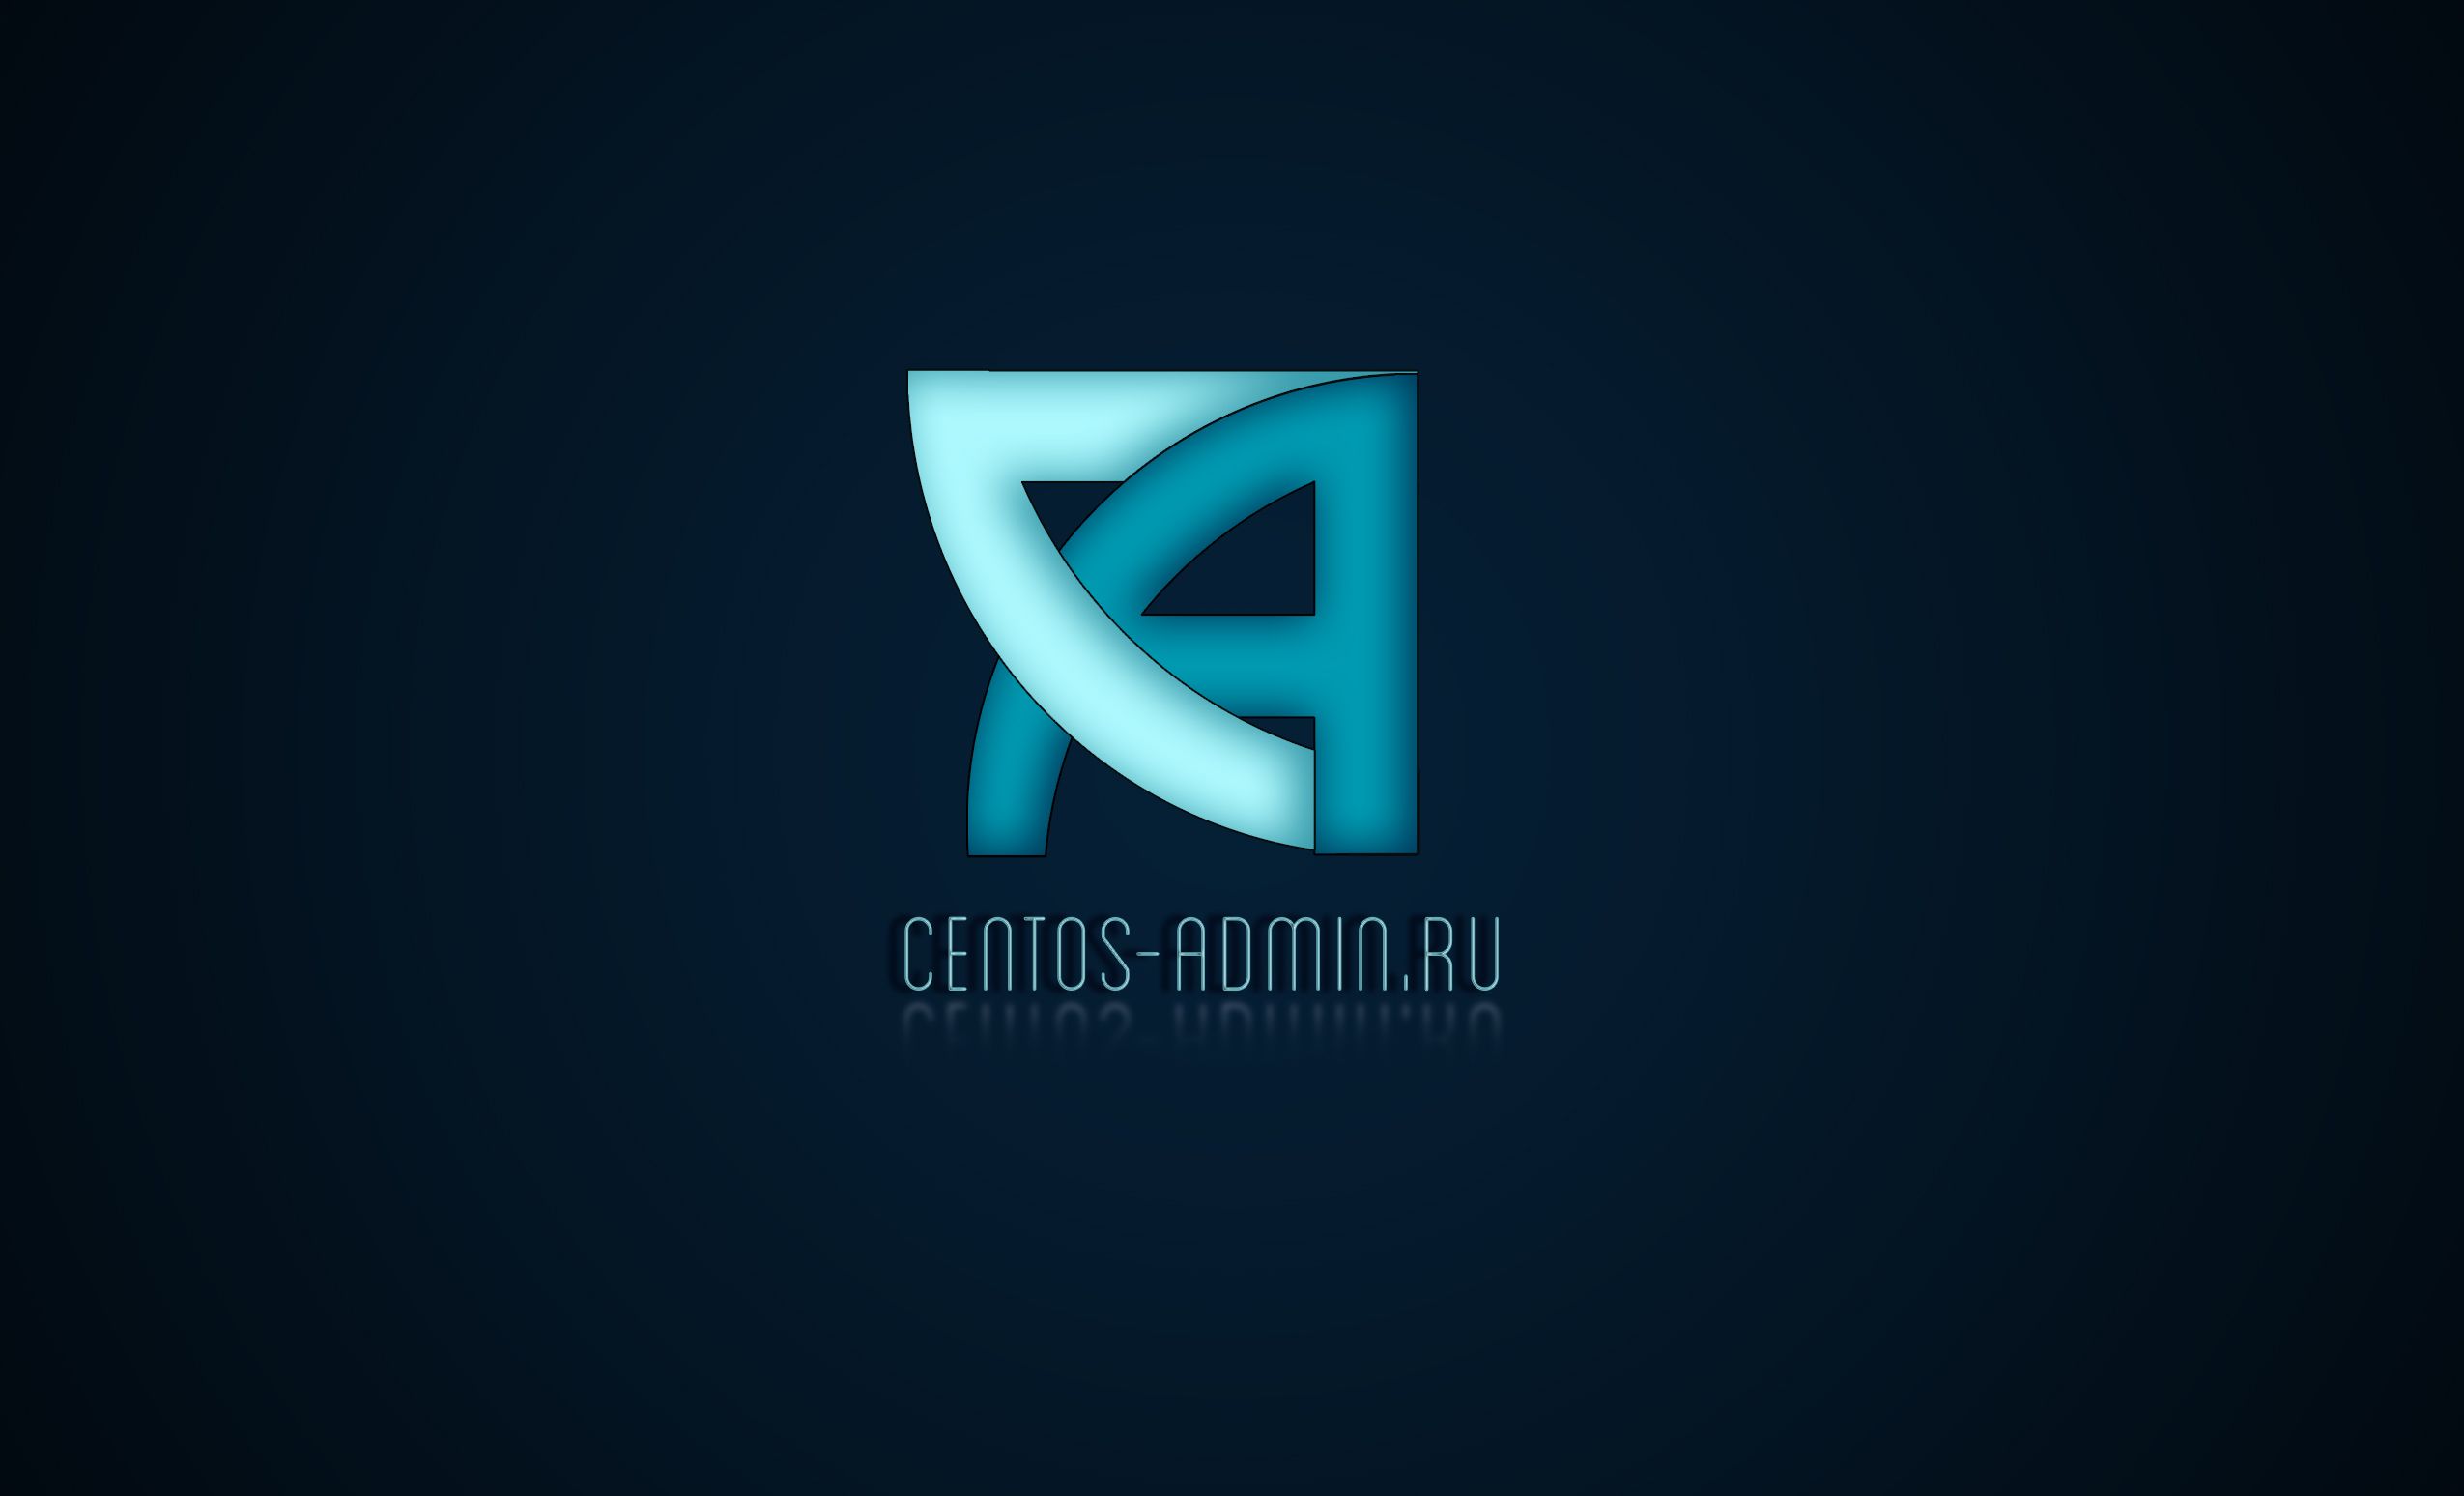 Логотип для компании Centos-admin.ru - дизайнер Ana_Den